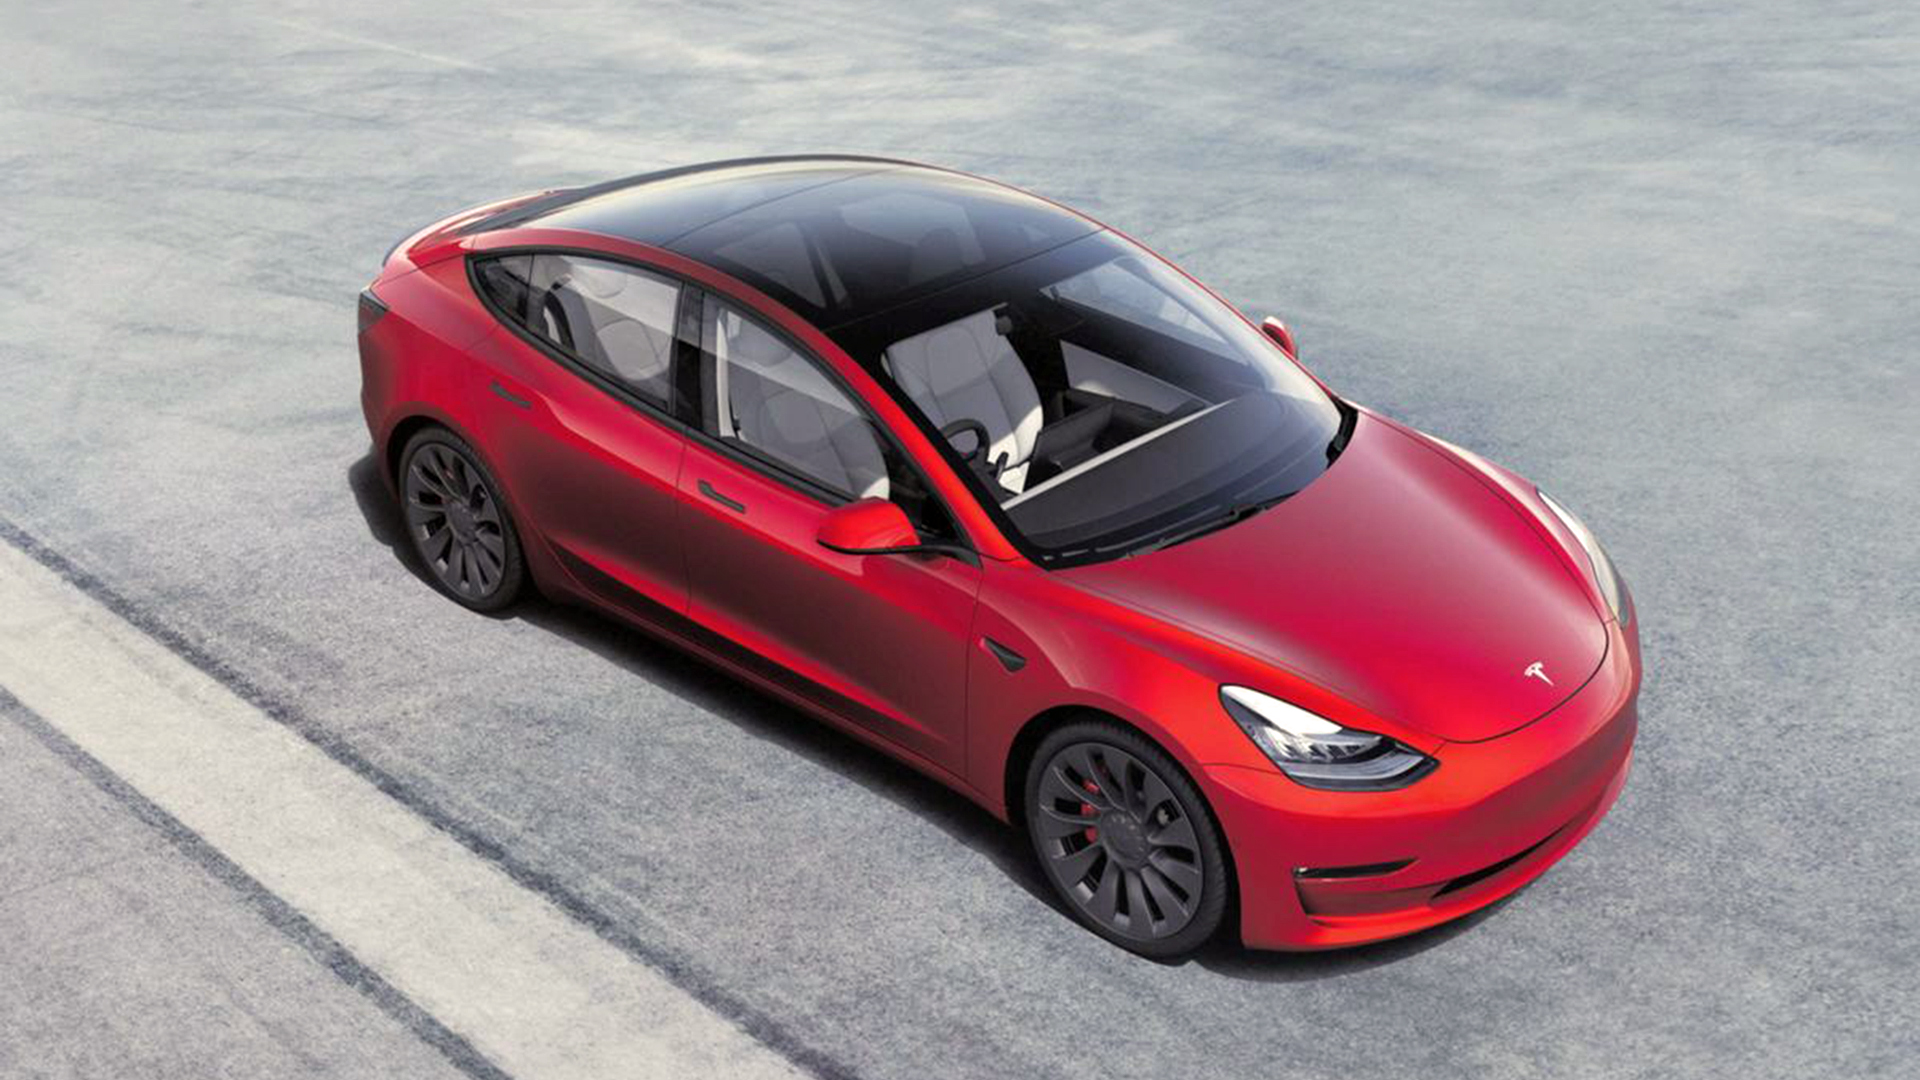 Un hito para la industria, por primera vez en la historia, un auto eléctrico entre en la lista de los primeros 10 en ventas a nivel mundial. El mérito es de Elon Musk con el Tesla Model 3